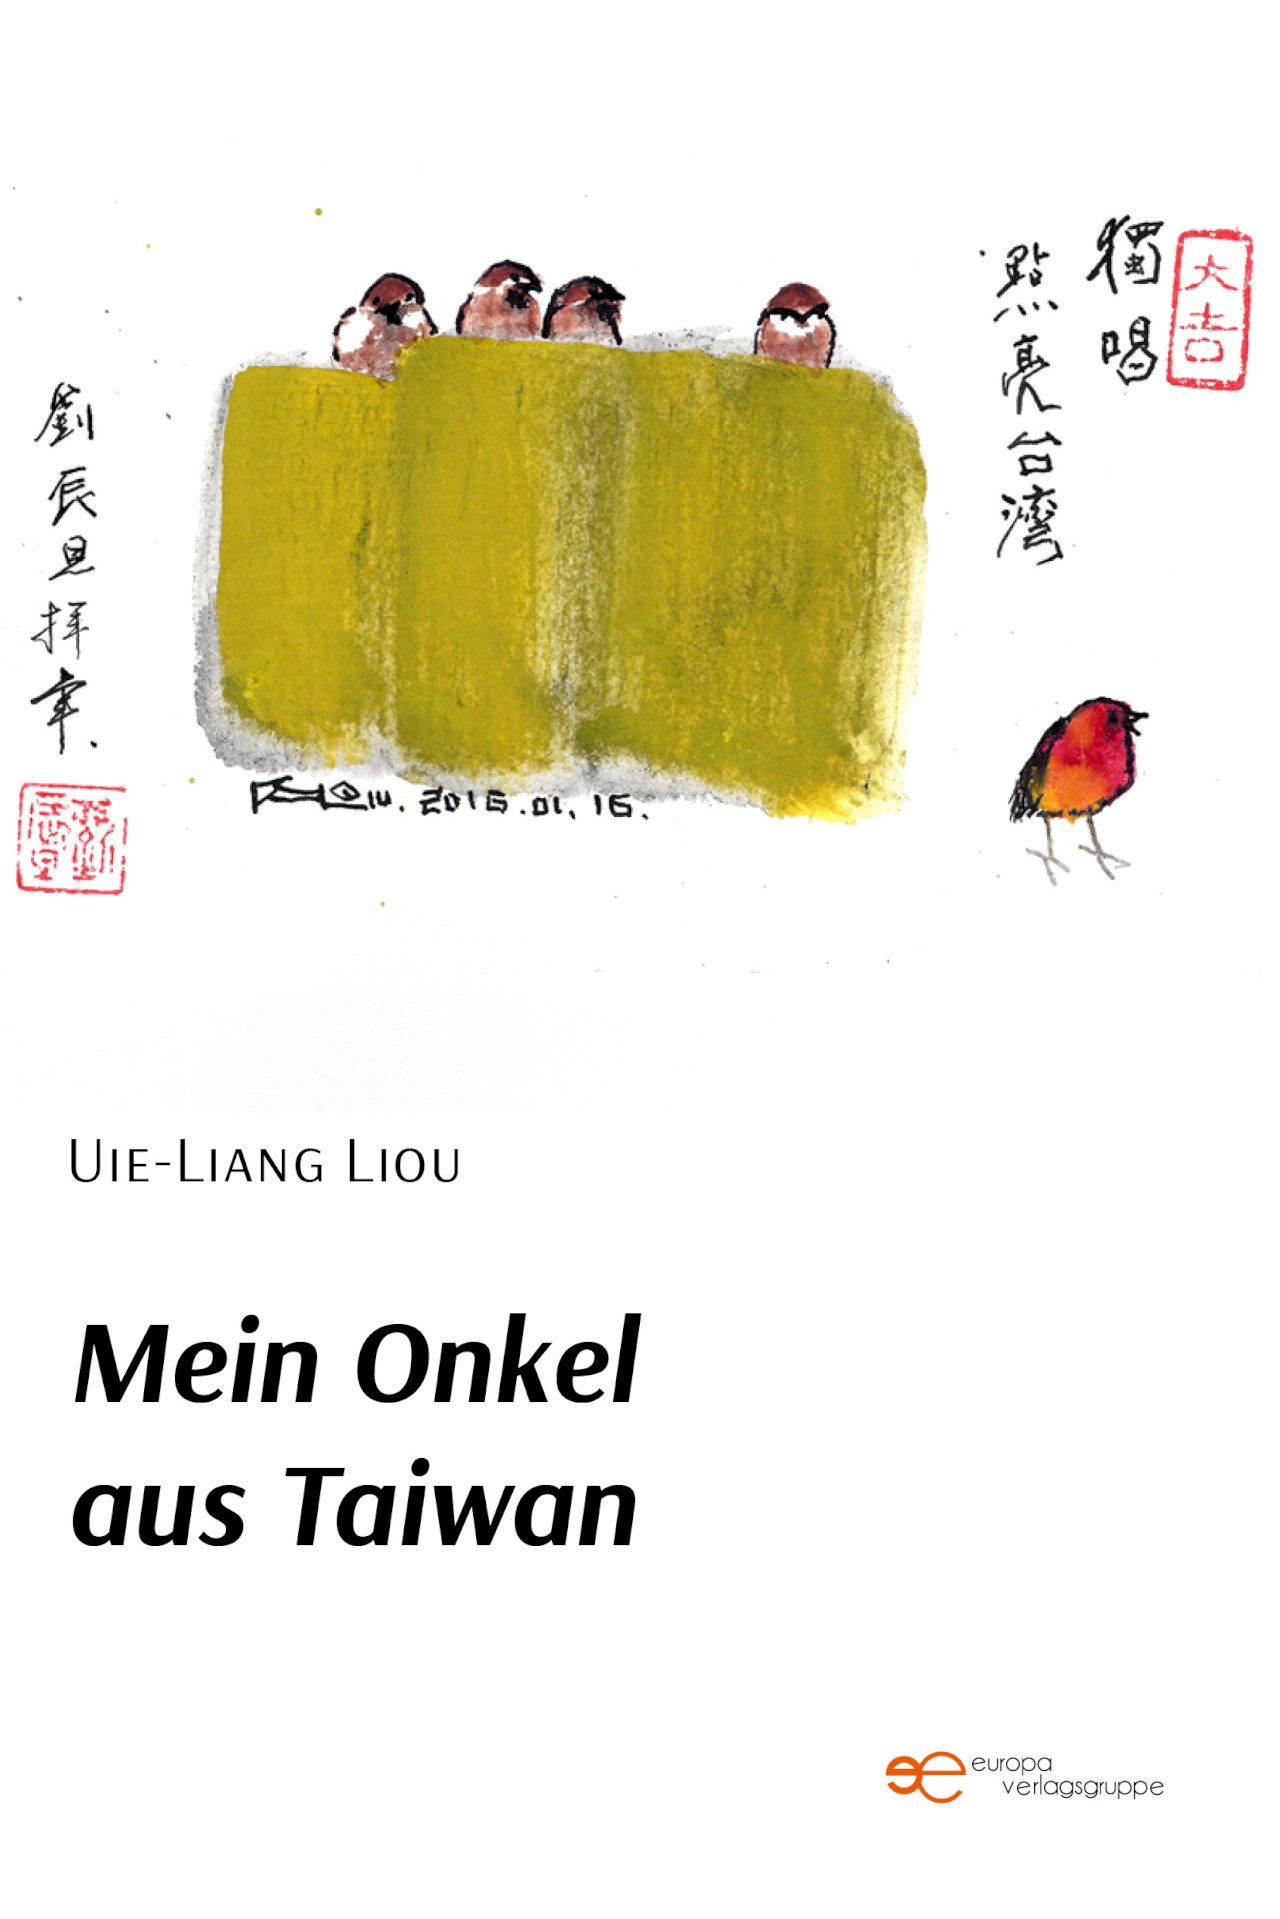 Autorin Uie-Liang Liou über ihre Identitätsfindung